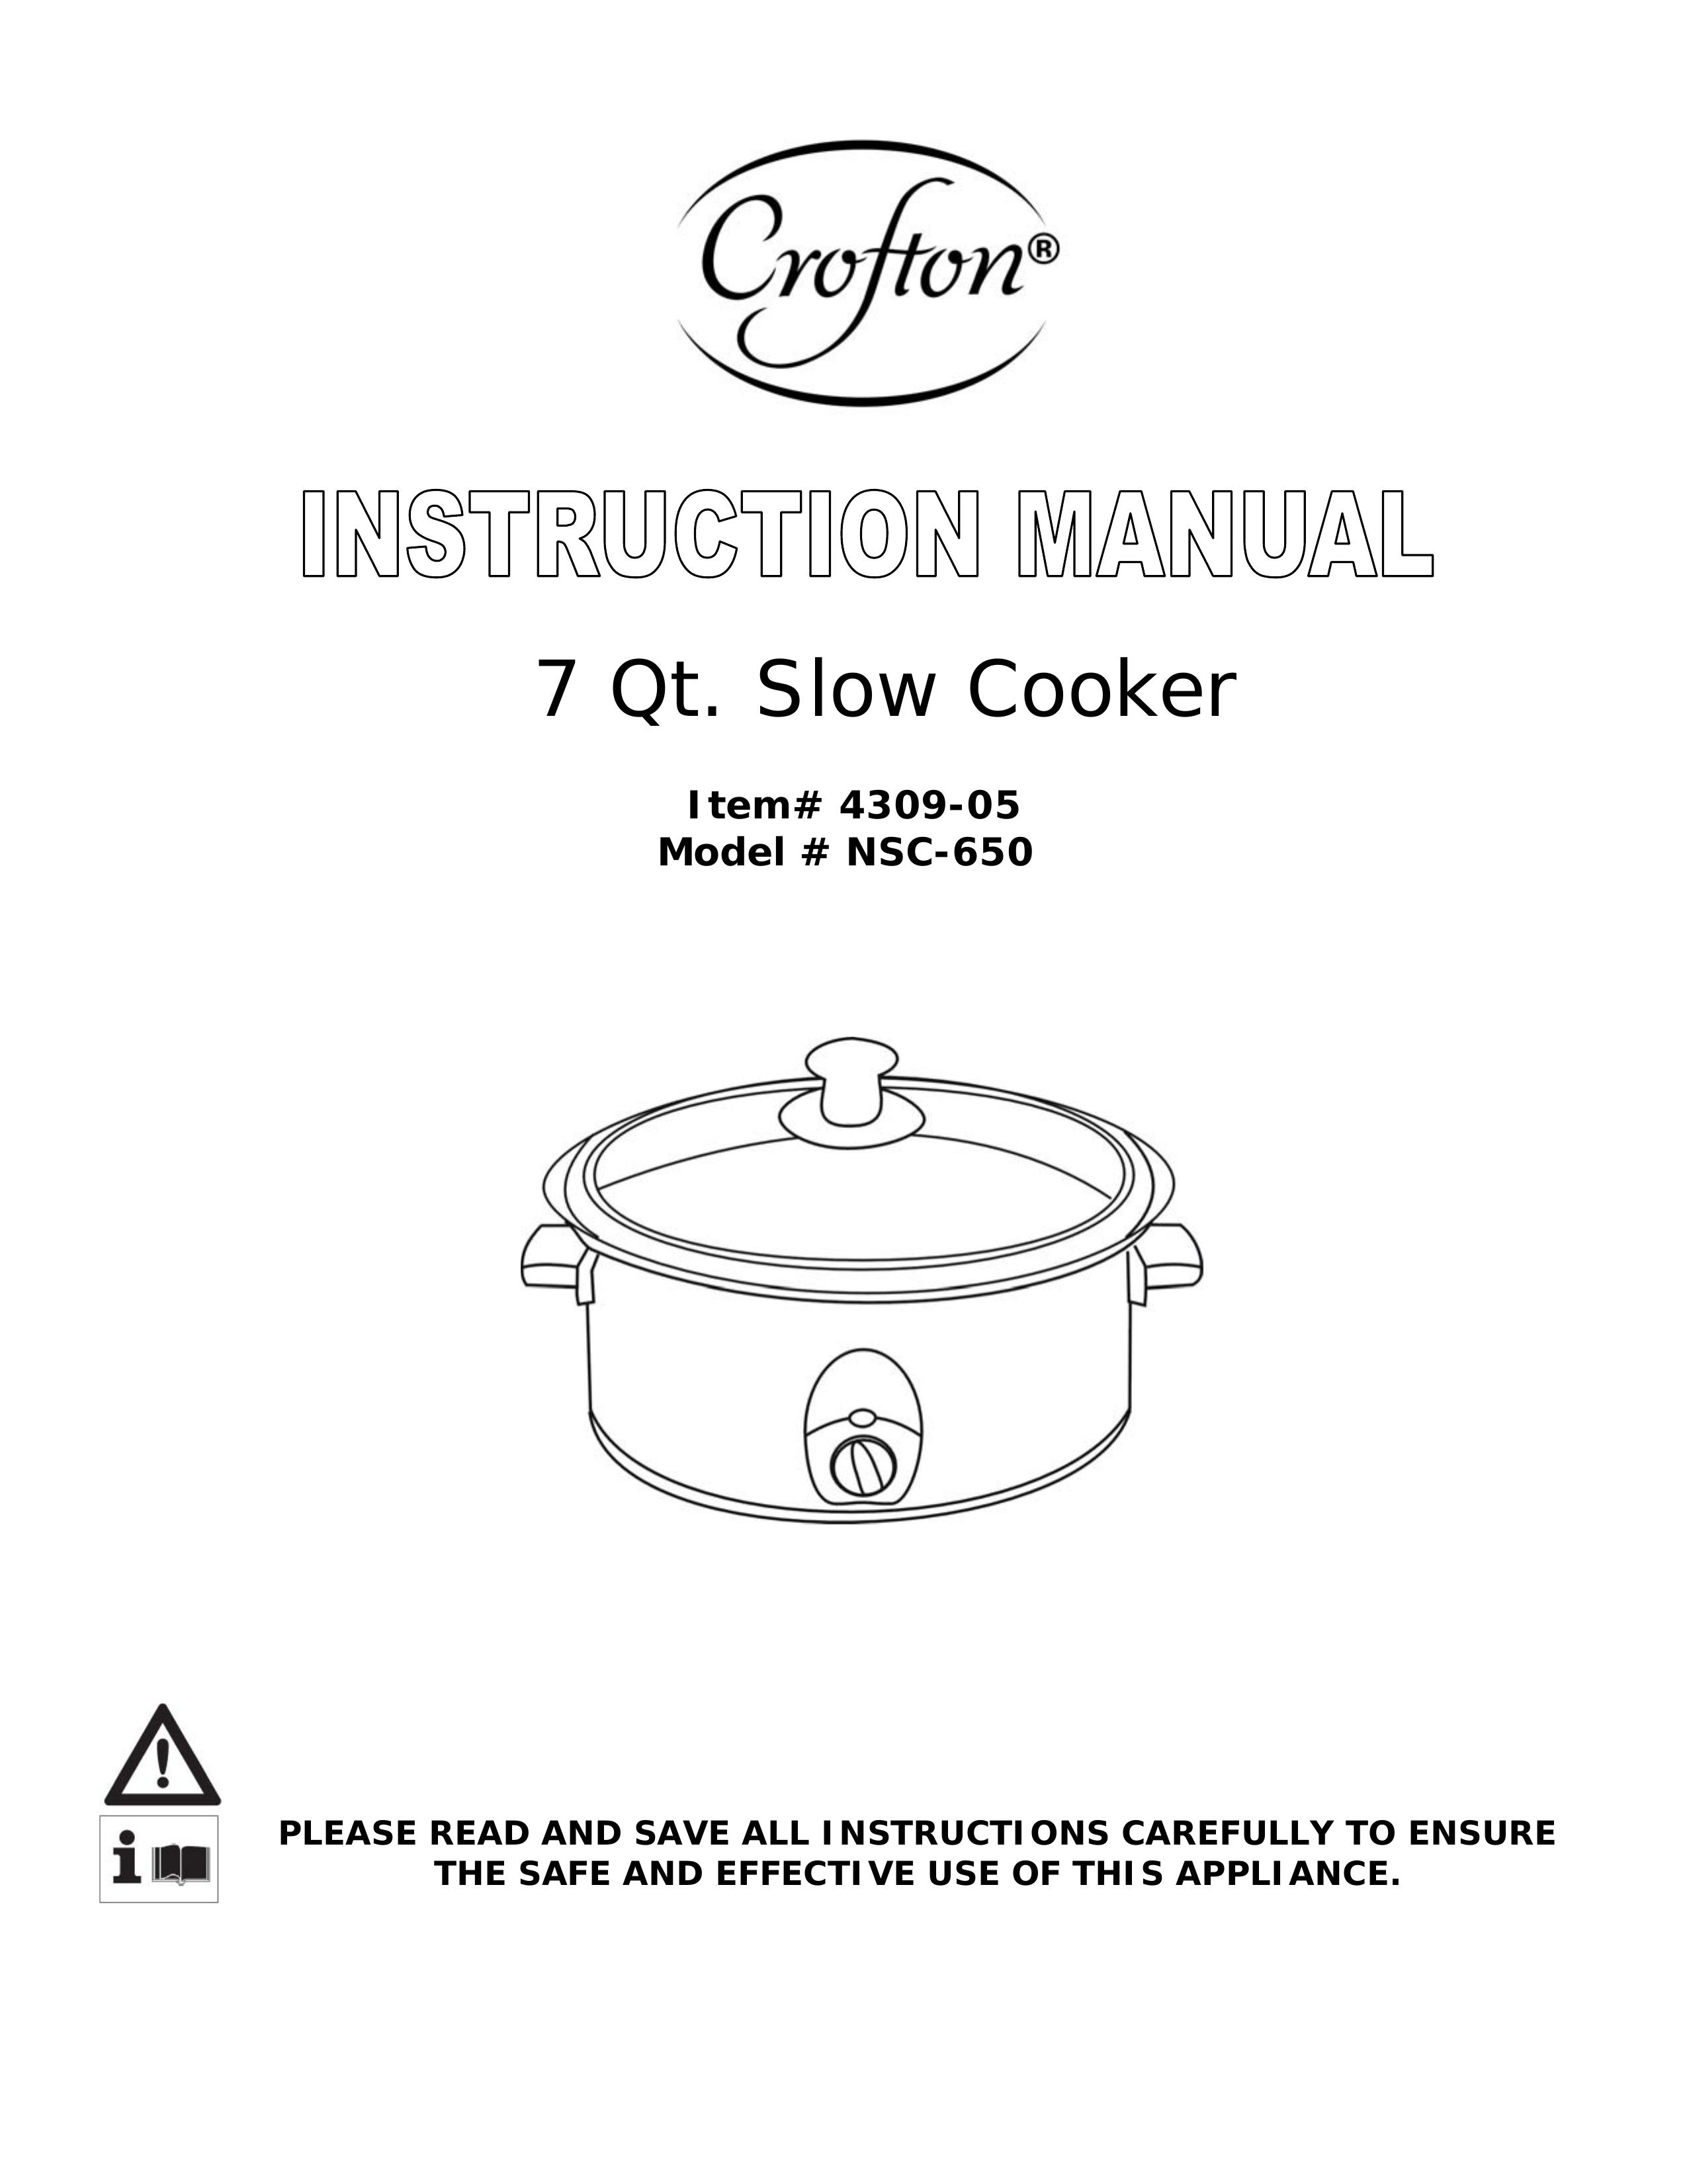 Wachsmuth & Krogmann NSC-650 Slow Cooker User Manual